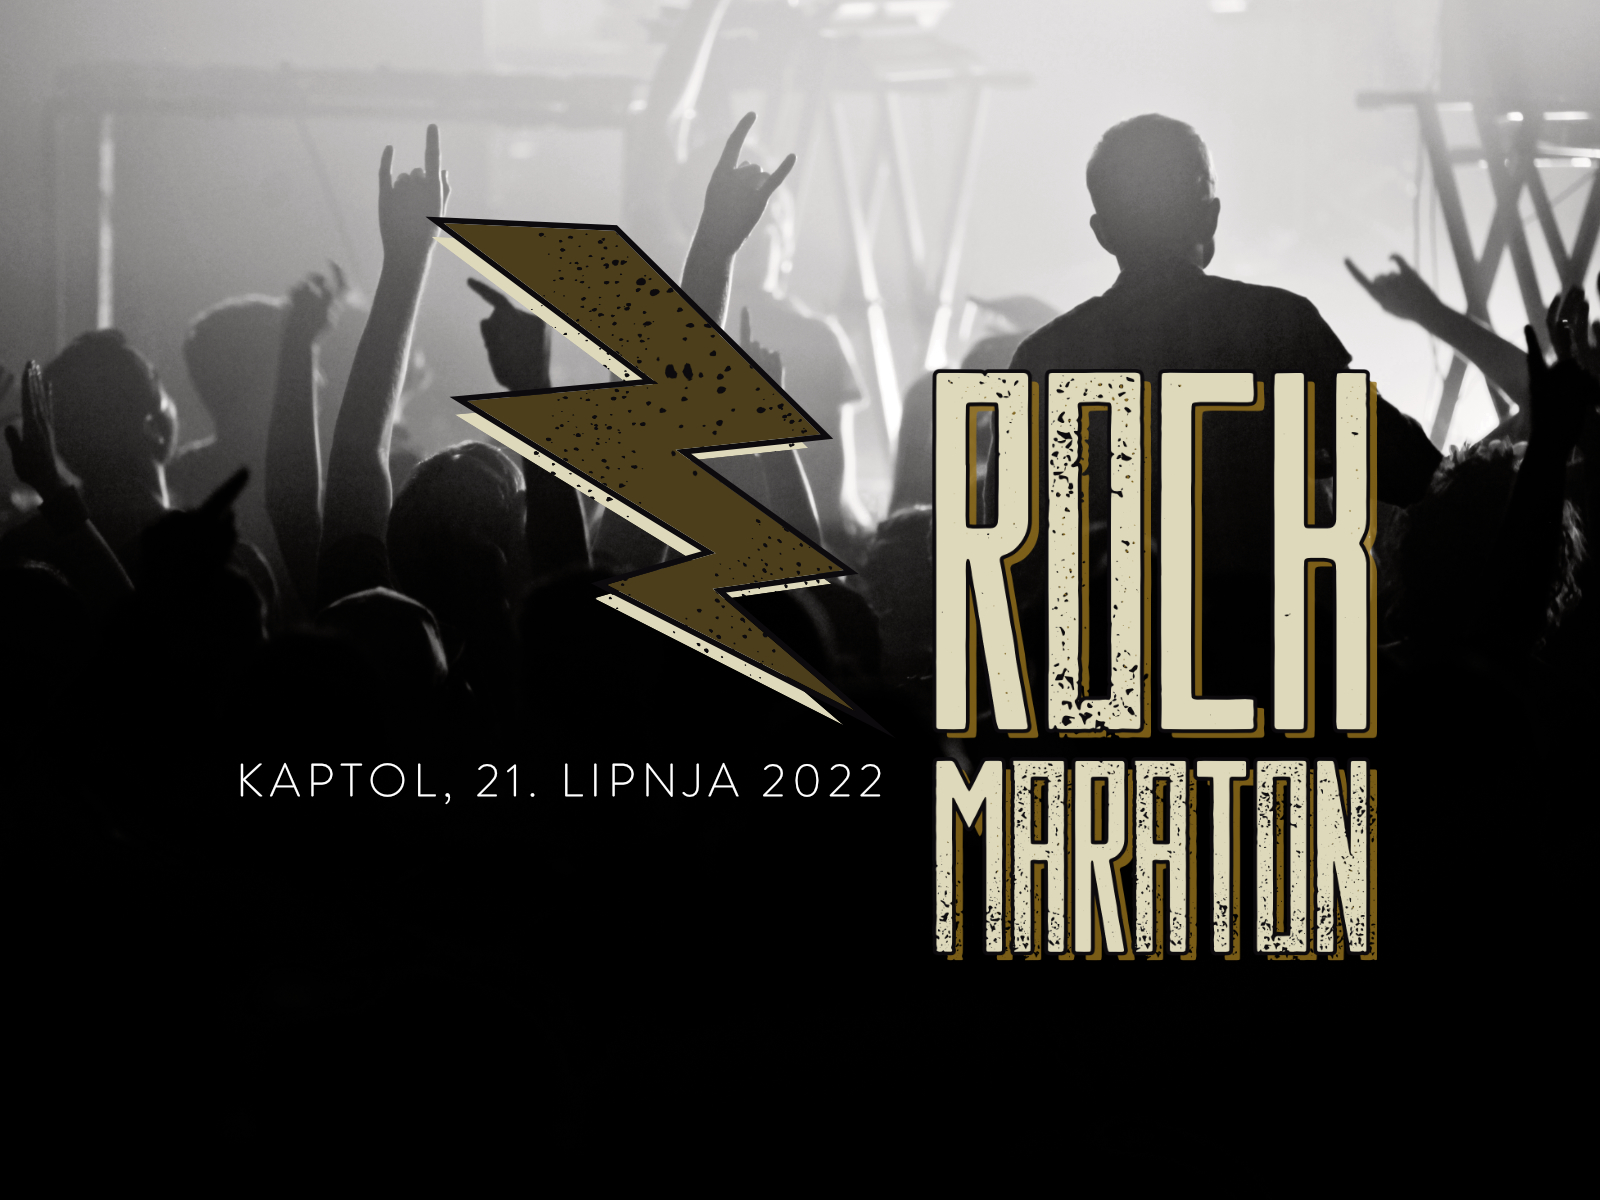 Rock maraton ponovno u Kaptolu